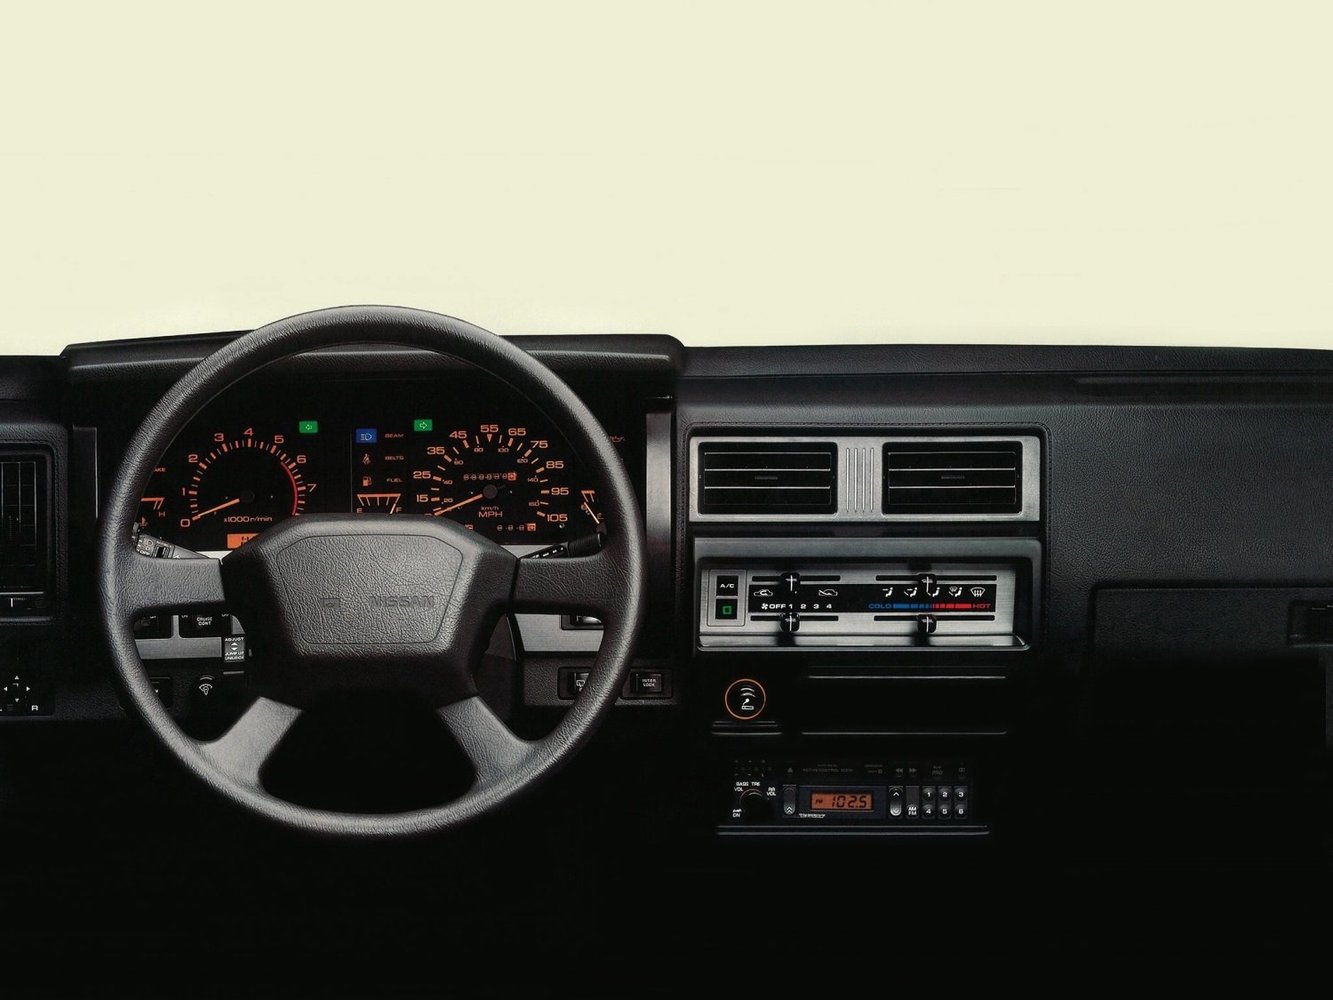 внедорожник 3 дв. Nissan Pathfinder 1986 - 1997г выпуска модификация 2.4 MT (103 л.с.) 4×4